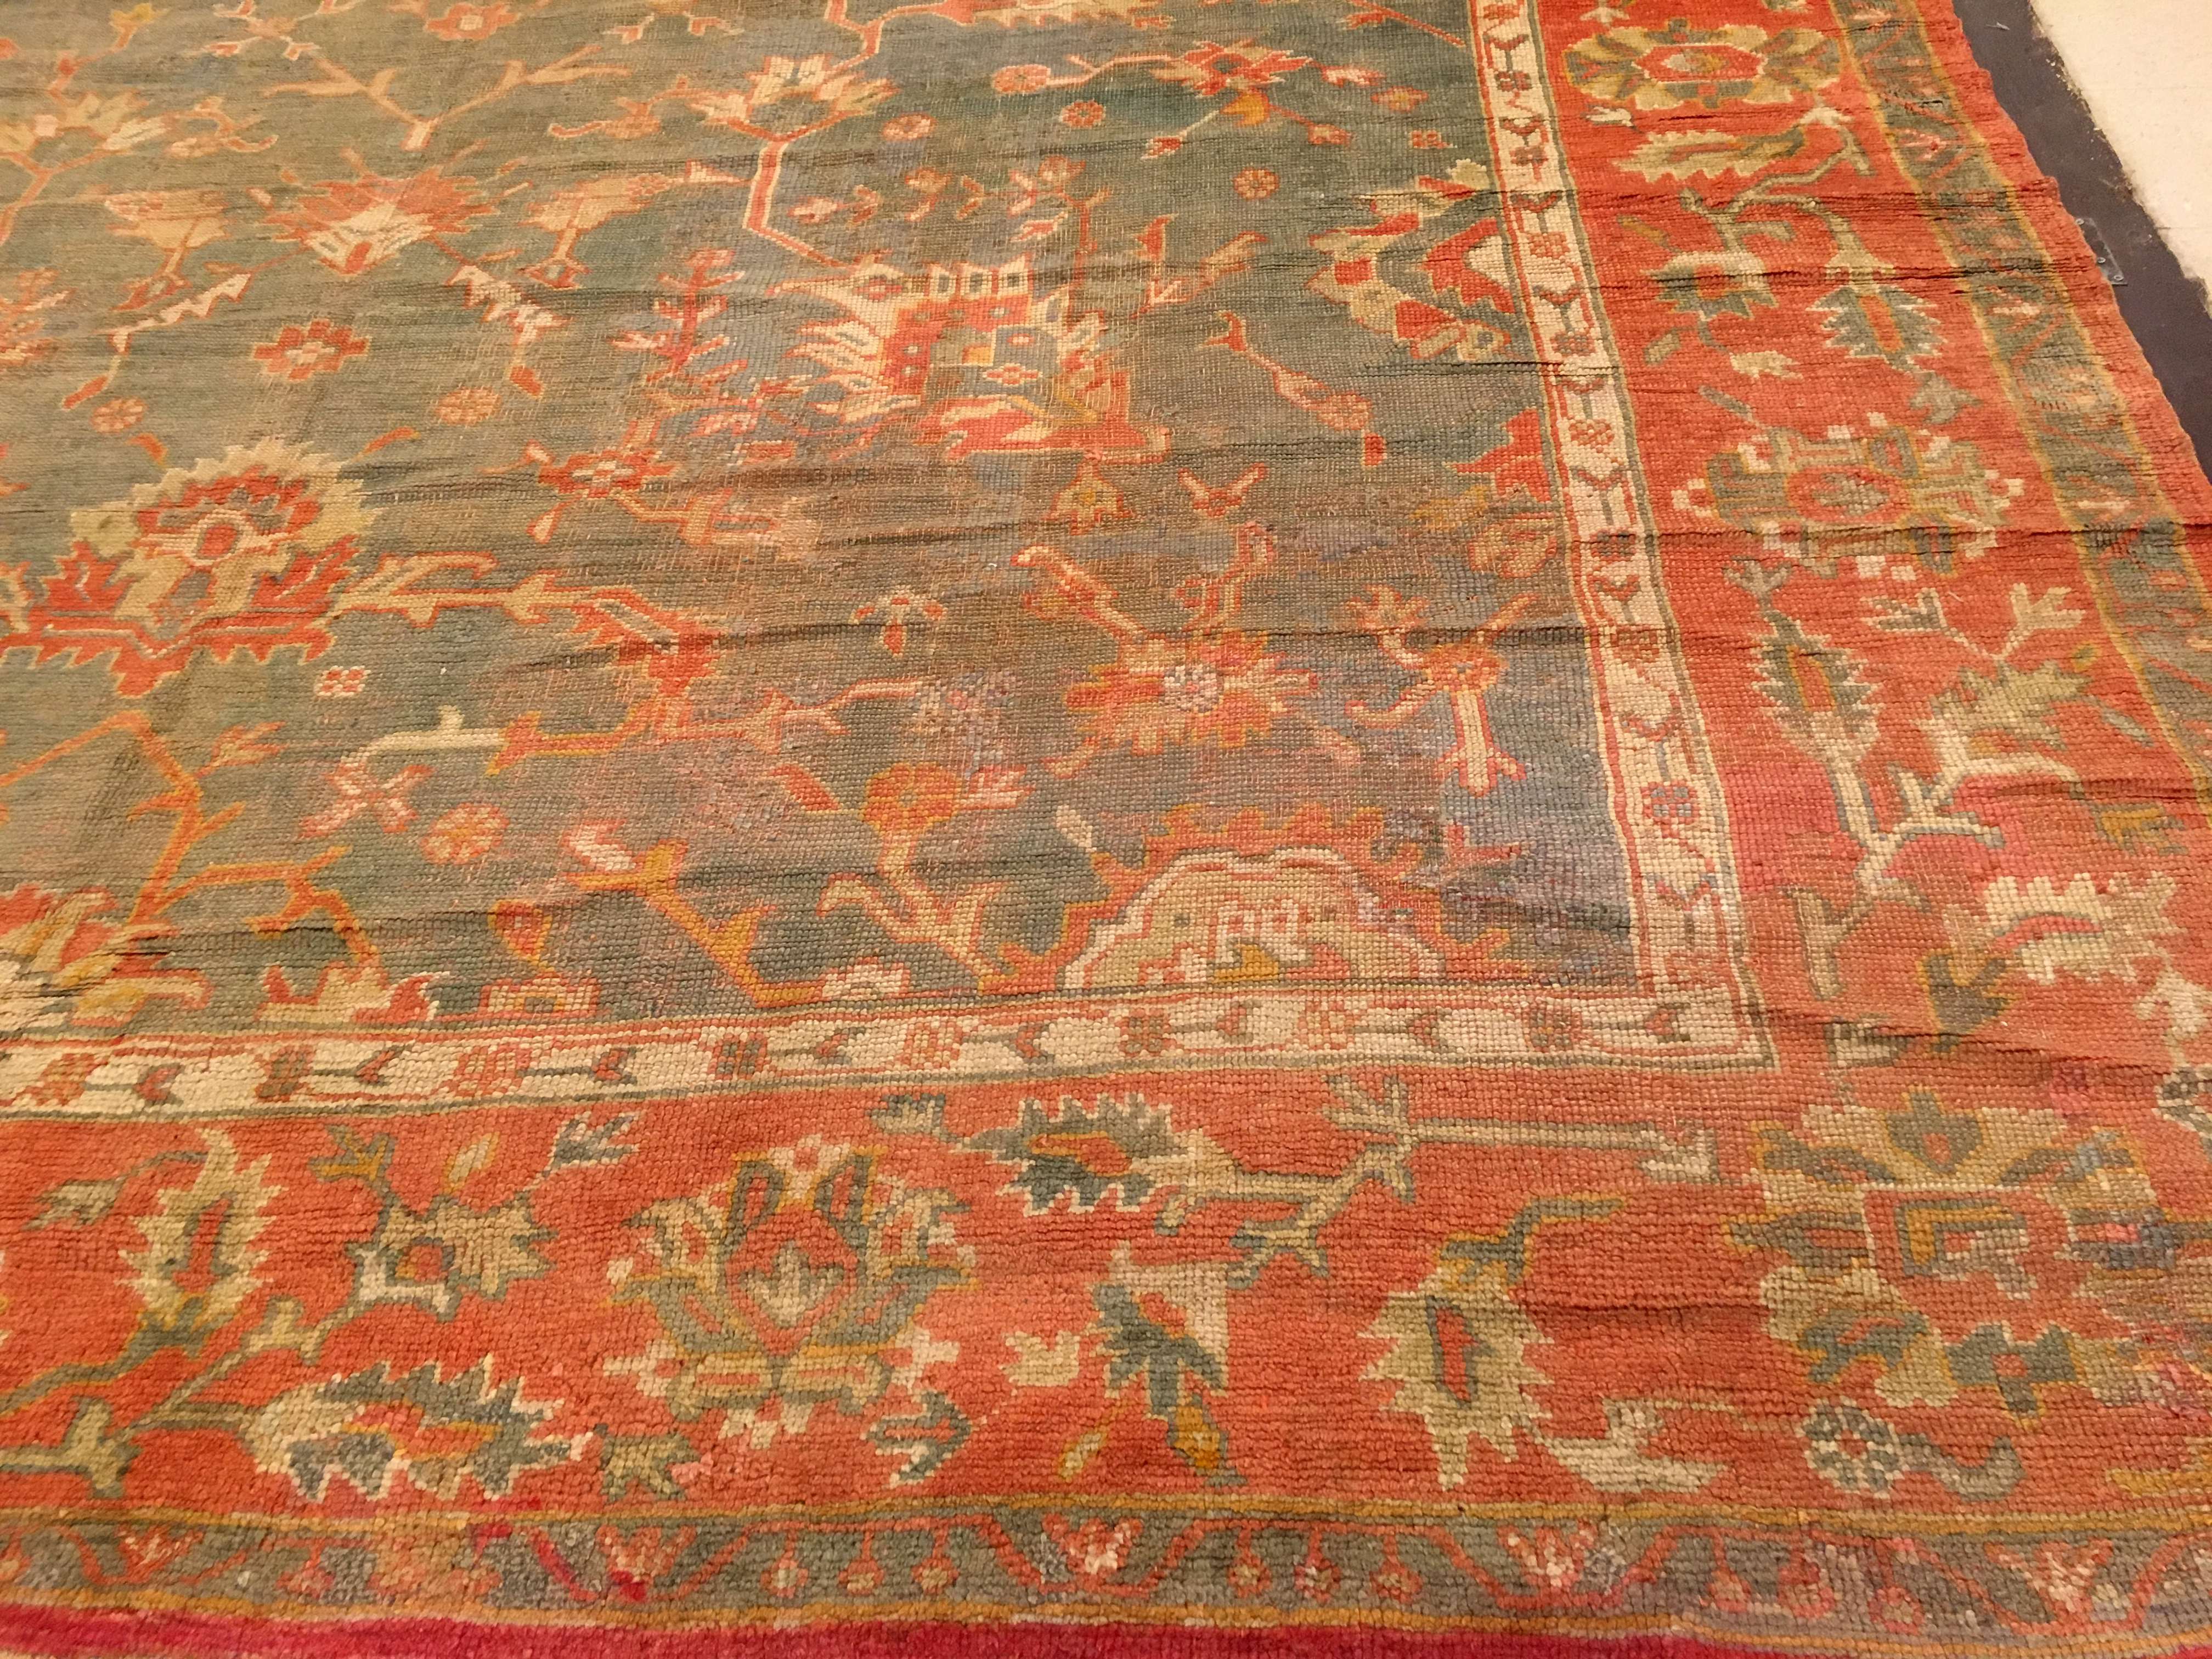 Antique oushak Carpet - # 53661